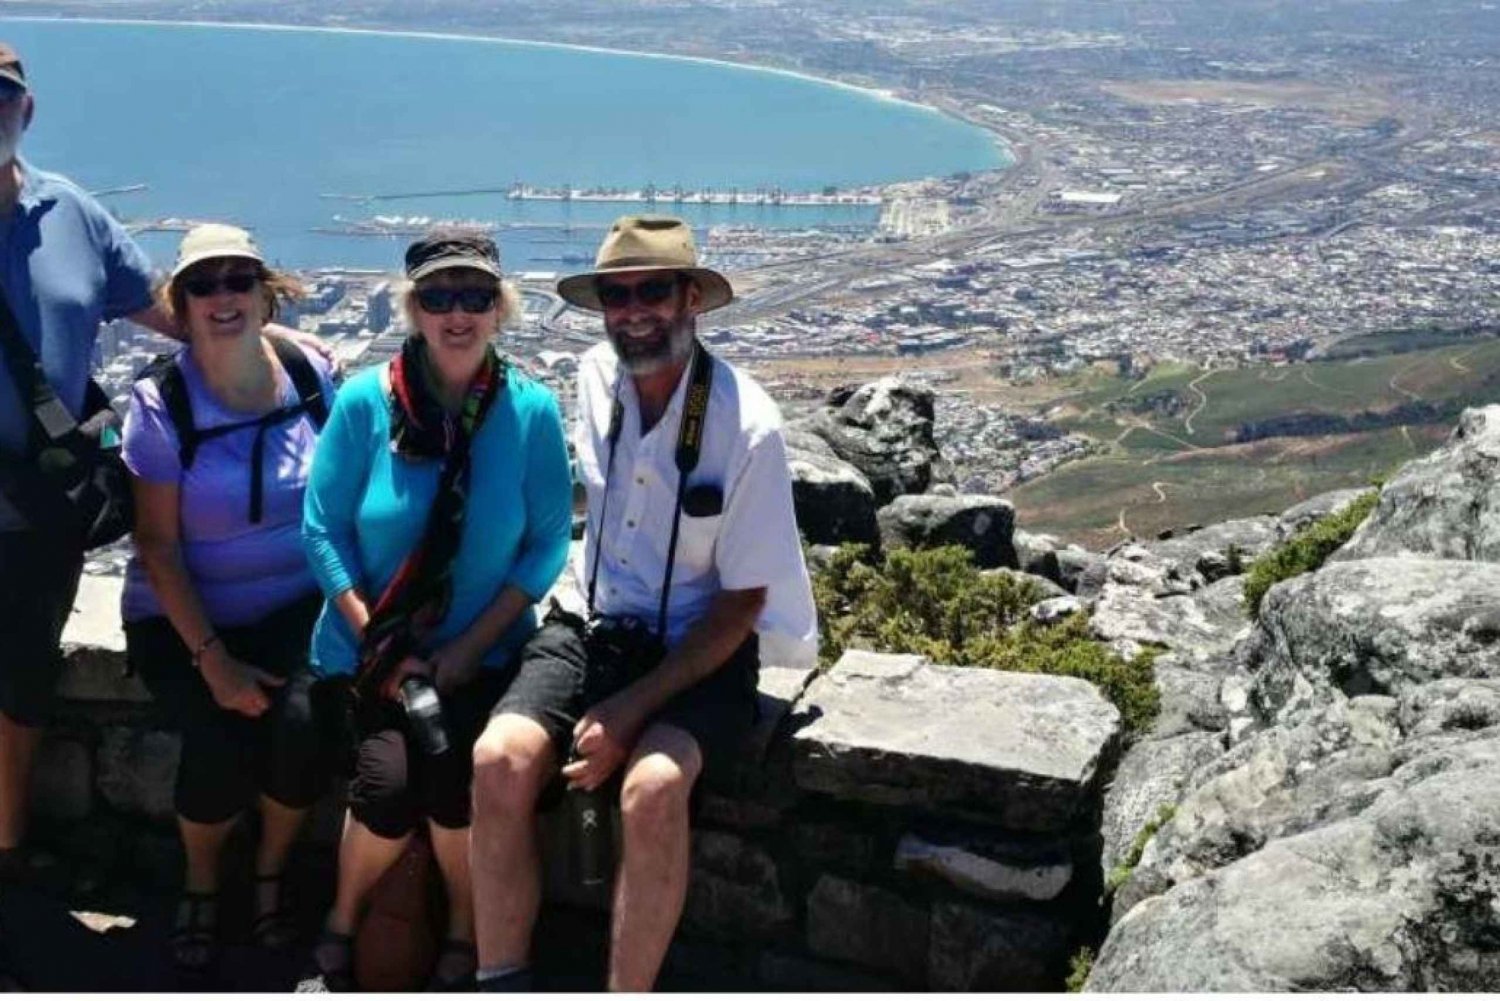 1 Day CapeTown Pvt Tour: Table Mountain, Cape Point & Pengui